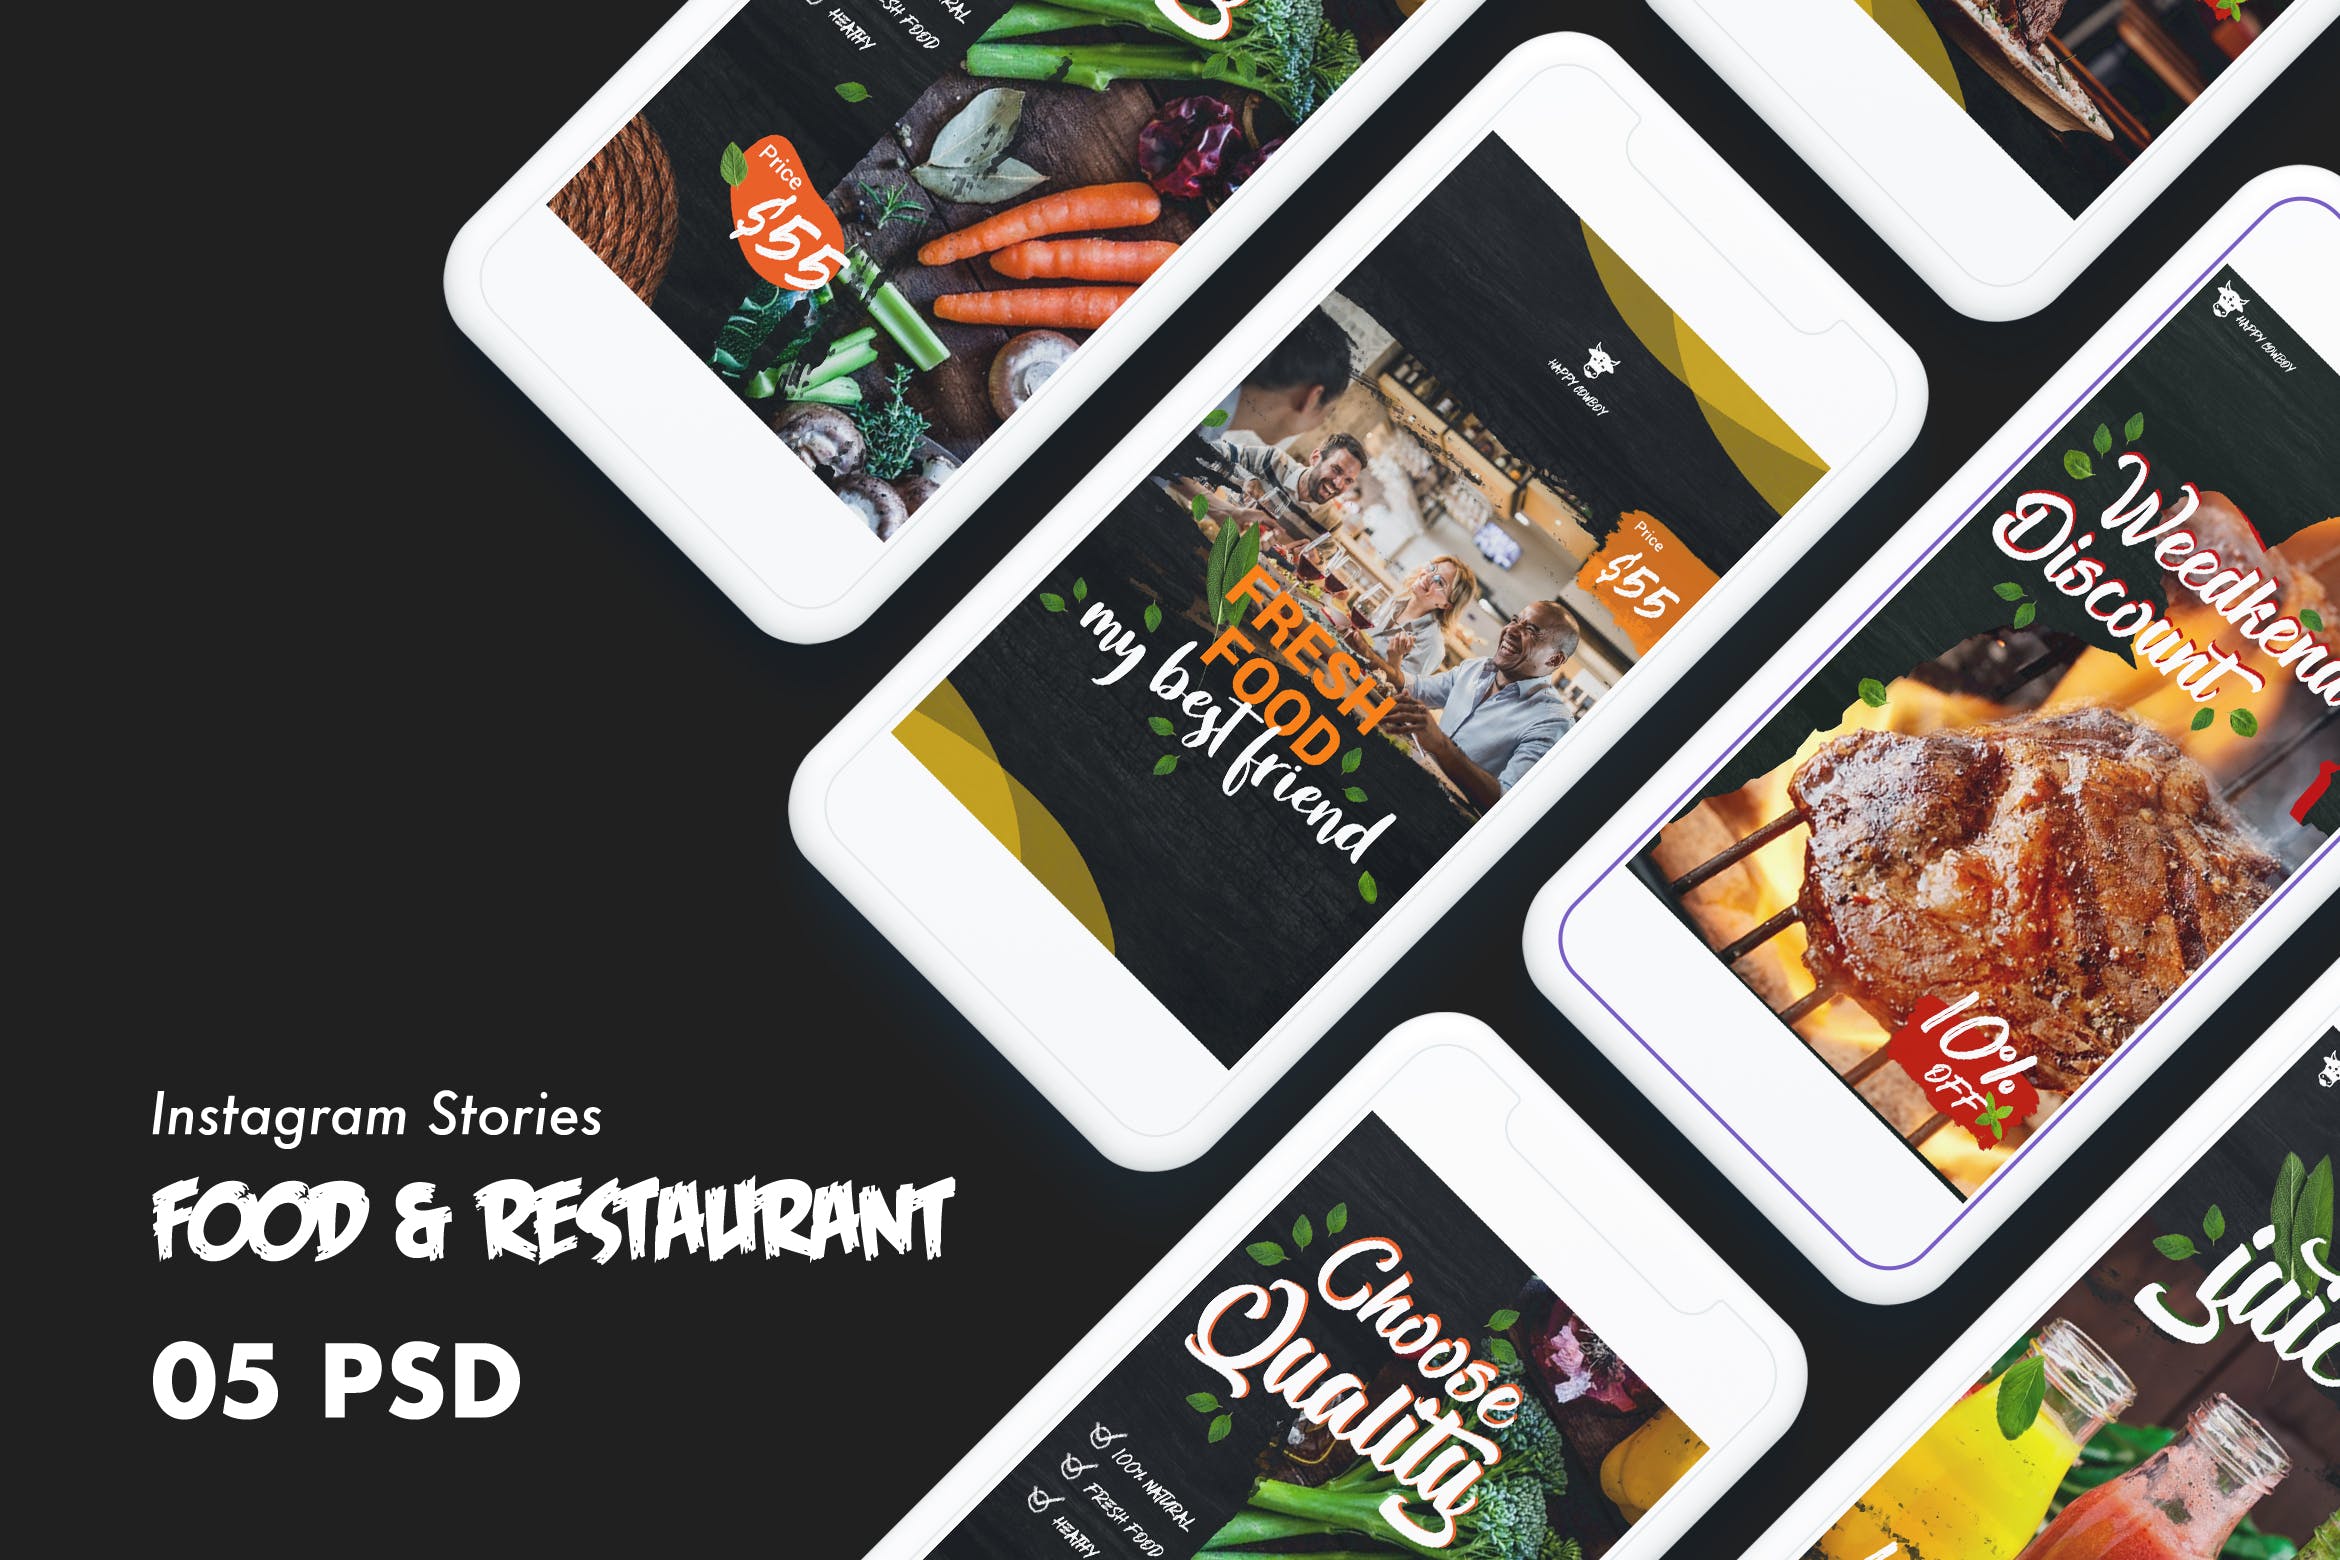 西式美食&餐厅Instagram品牌广告设计PSD模板素材中国精选 Food & Restaurants Instagram Stories PSD Template插图